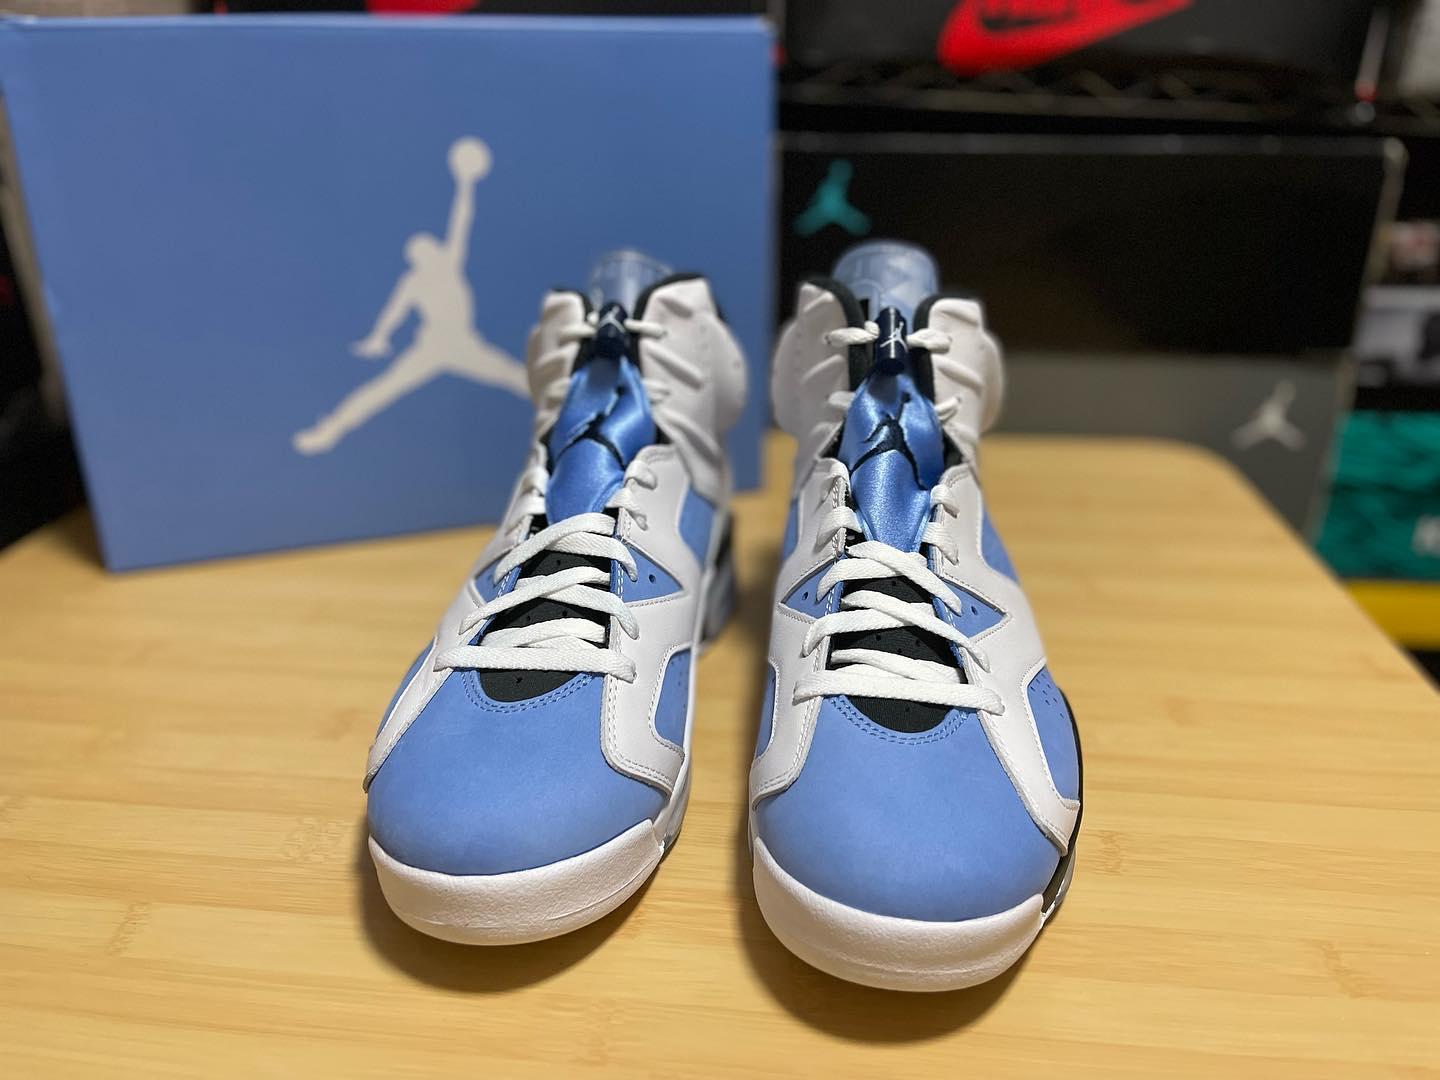 Nike Air Jordan 6 AJ6 大学蓝北卡蓝复古篮球鞋正品实拍 对比细节图_7